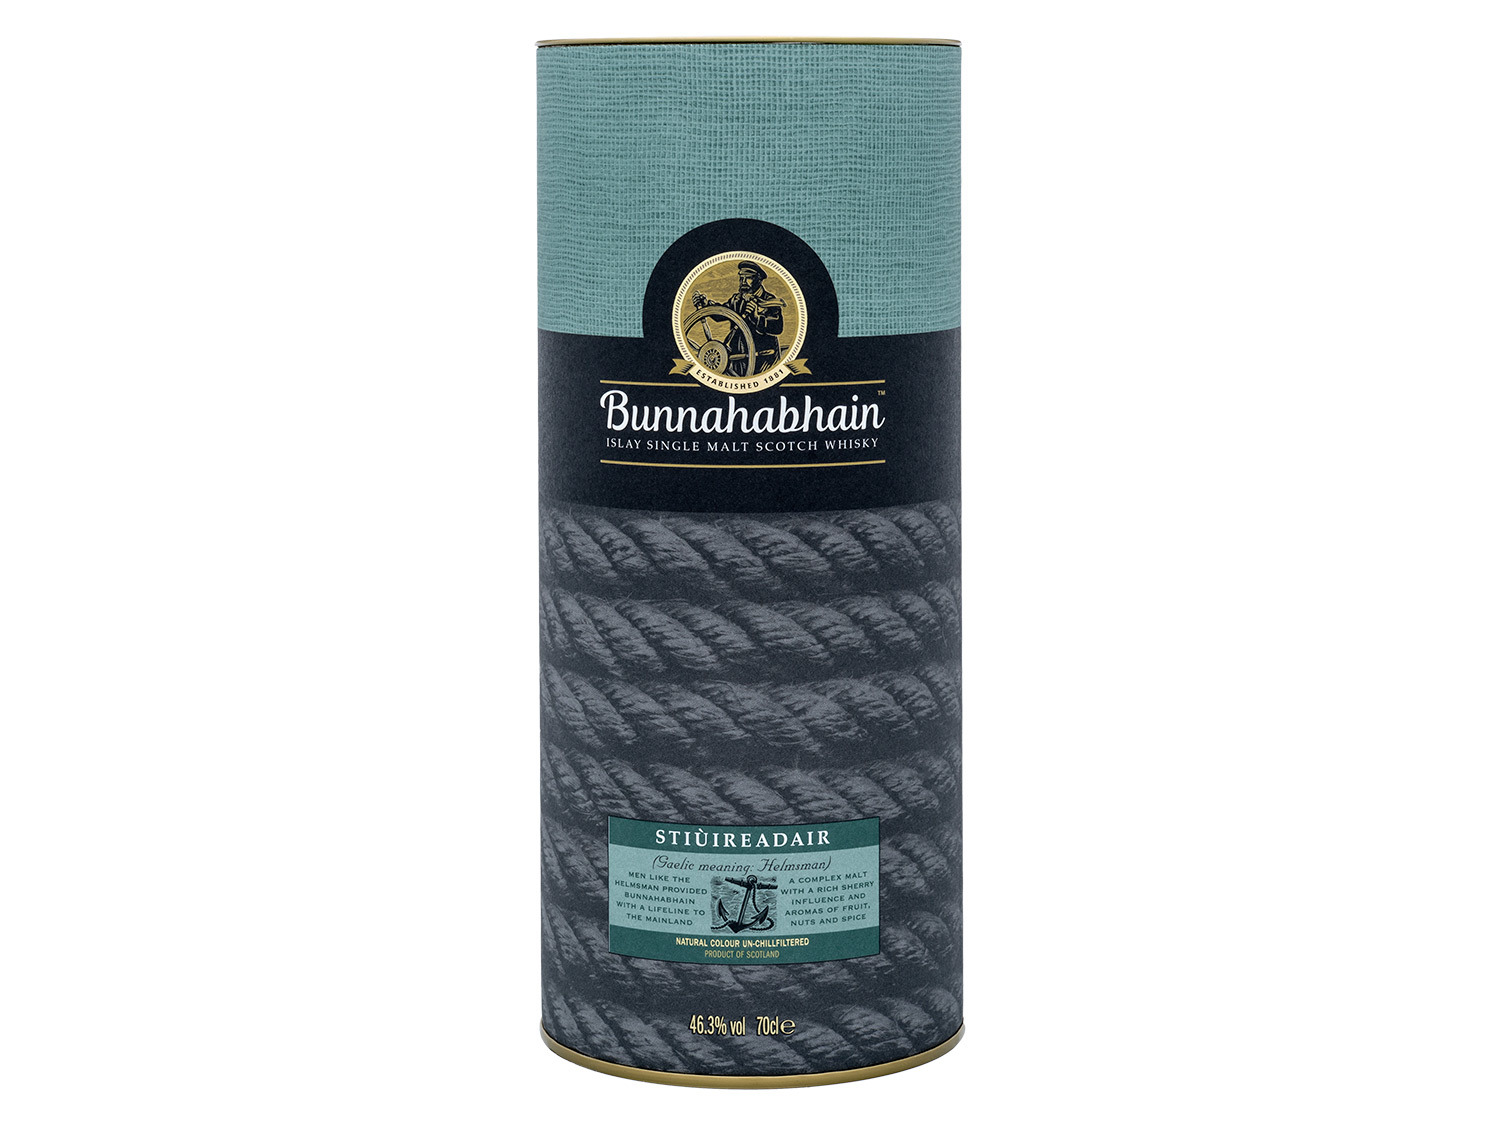 Scotch Malt Single Vol Bunnahabhain Whisky Islay 46,3% Stiùireadair